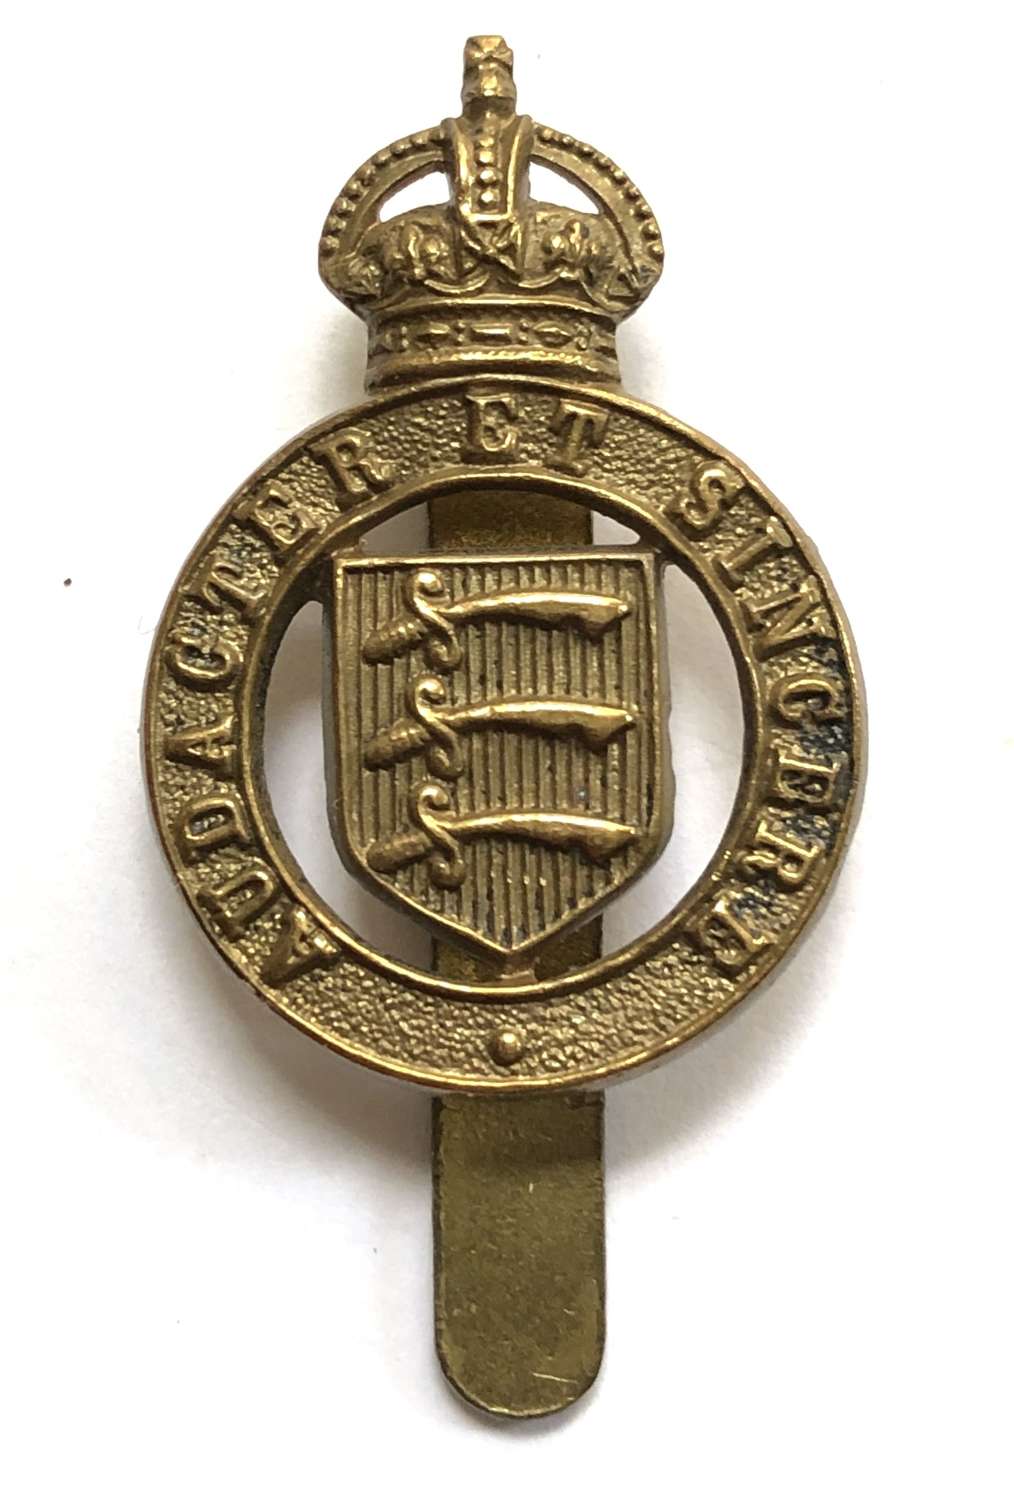 Essex Yeomanry WW2 cap/beret badge